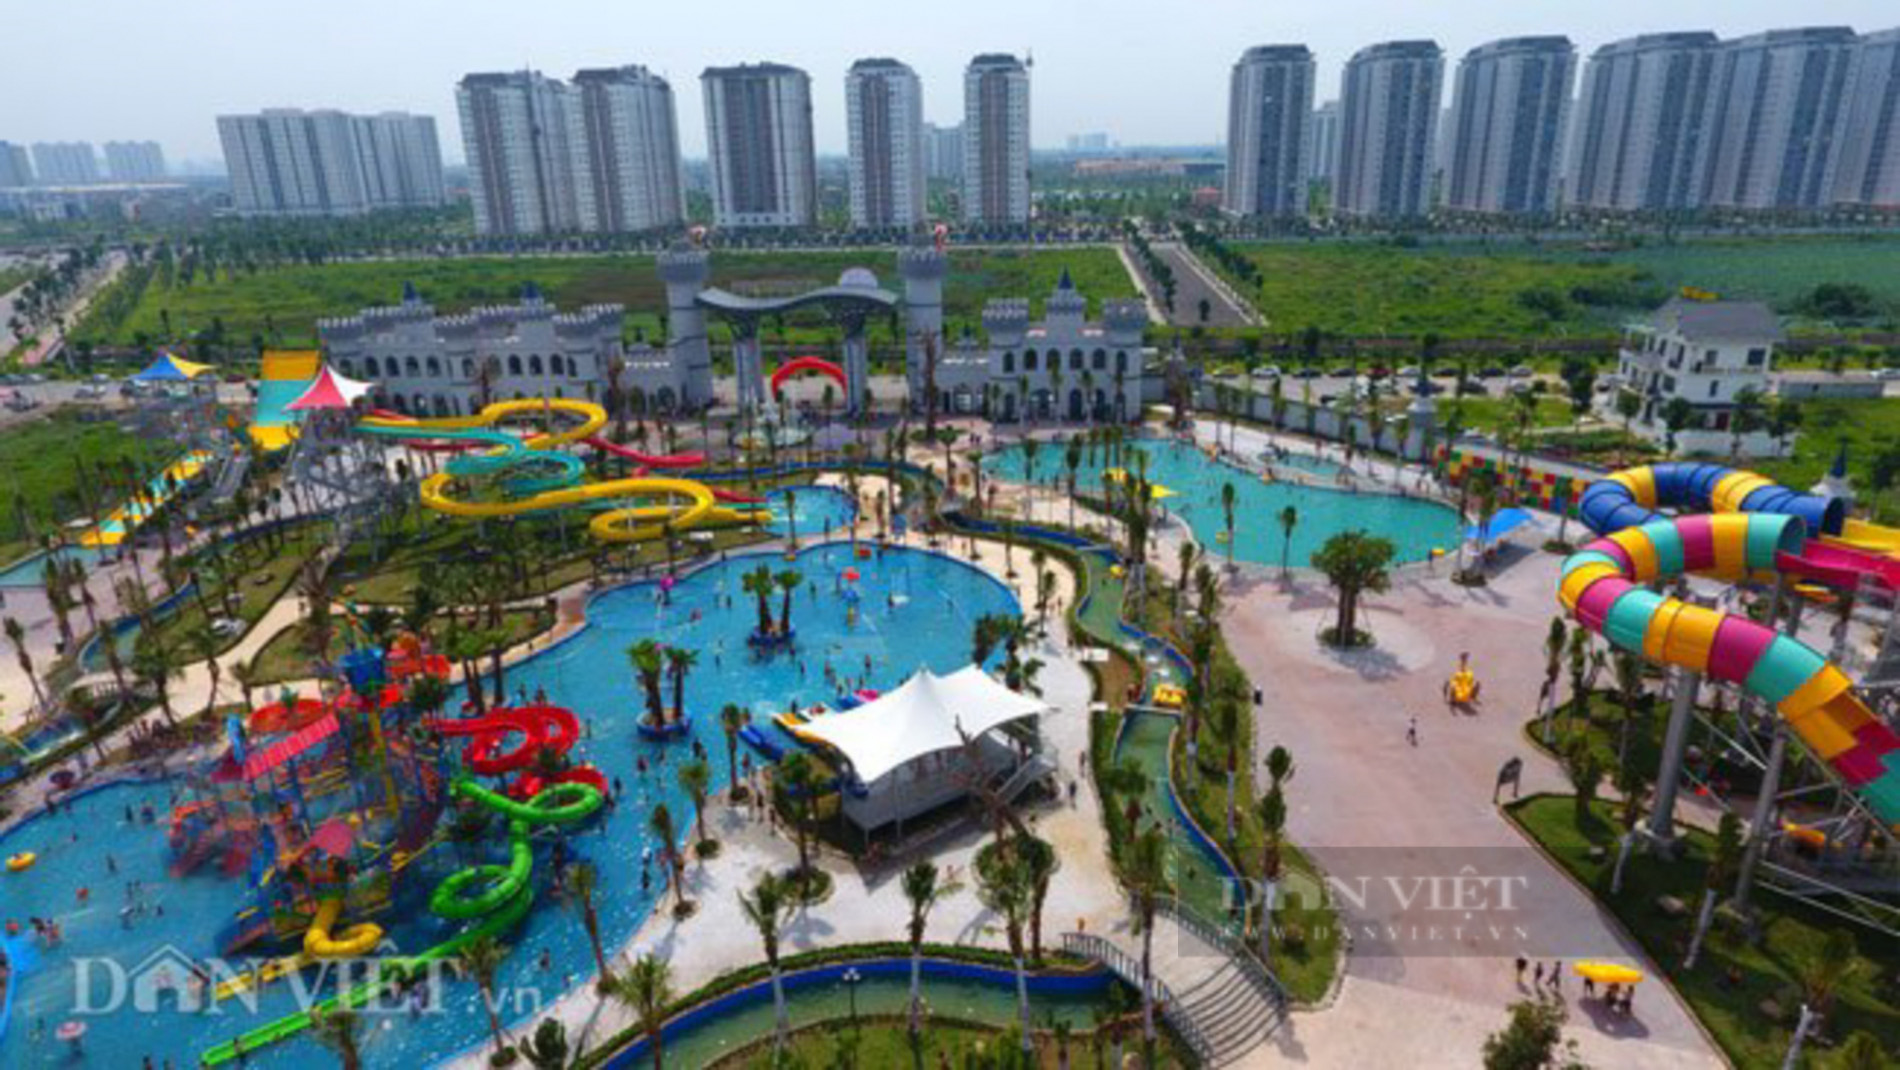 Công viên nước Thanh Hà được xây dựng tại vị trí khu đất A2.2, khu A khu đô thị Thanh Hà, quận Hà Đông, Hà Nội; khởi công từ tháng 10/2018 và mở cửa đón khách vào tháng 6/2019(Ảnh: Tư liệu).